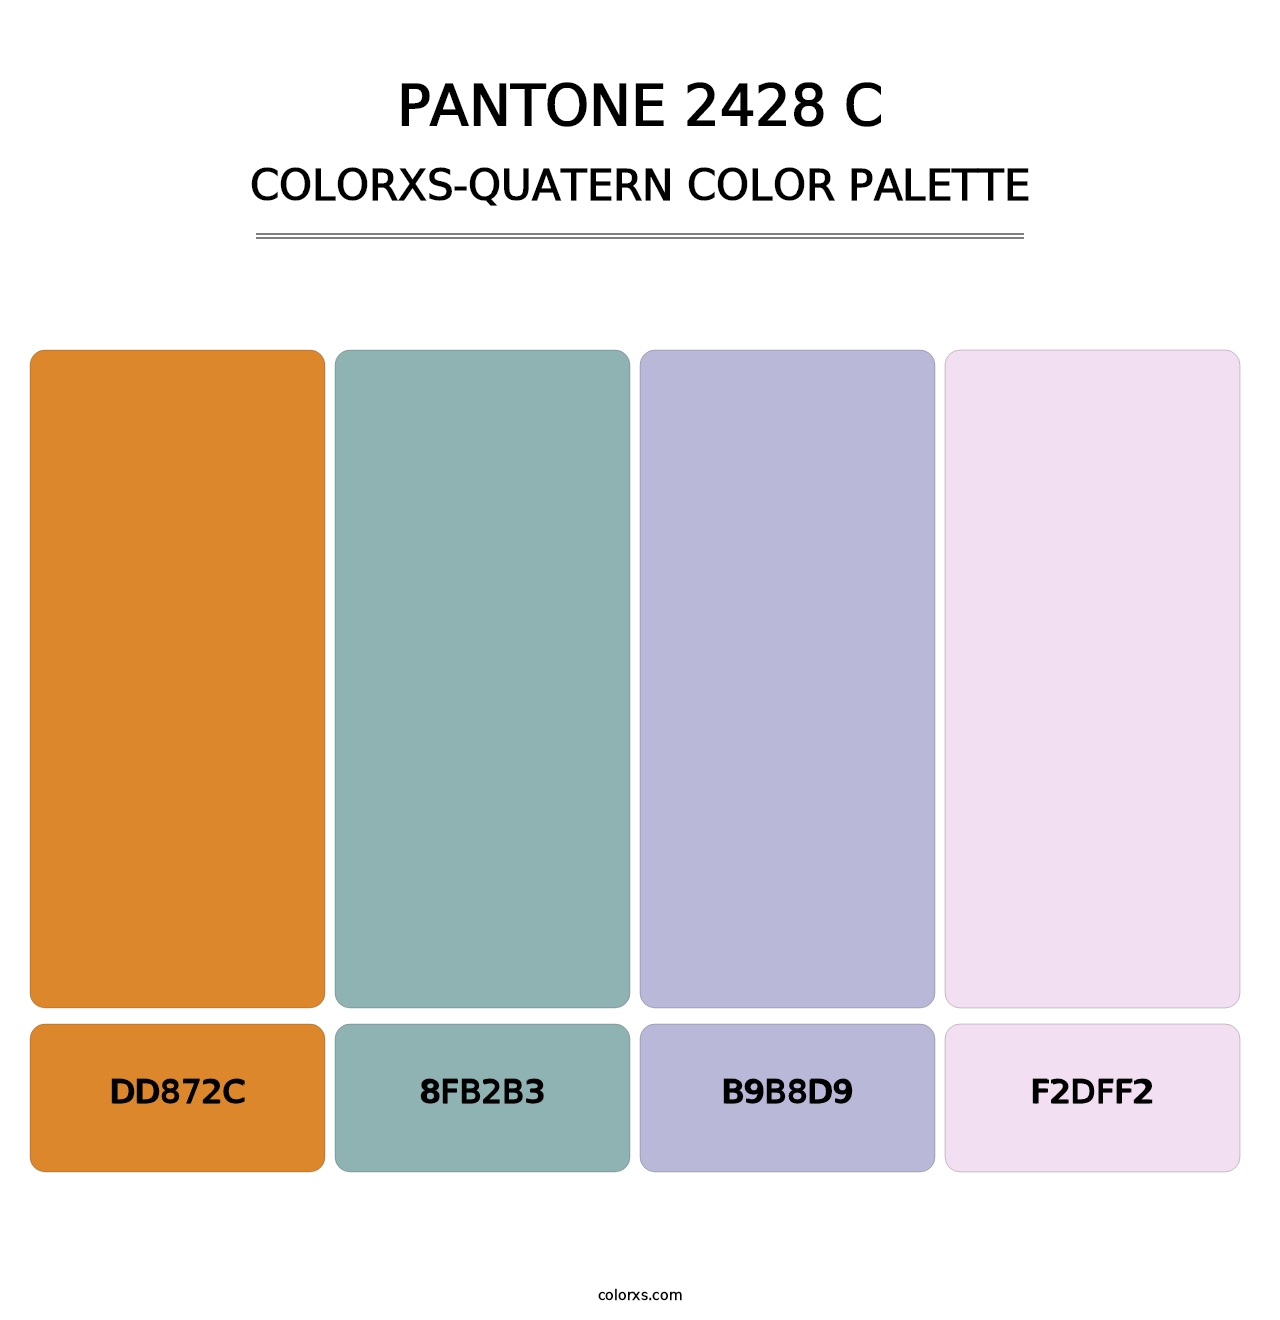 PANTONE 2428 C - Colorxs Quatern Palette